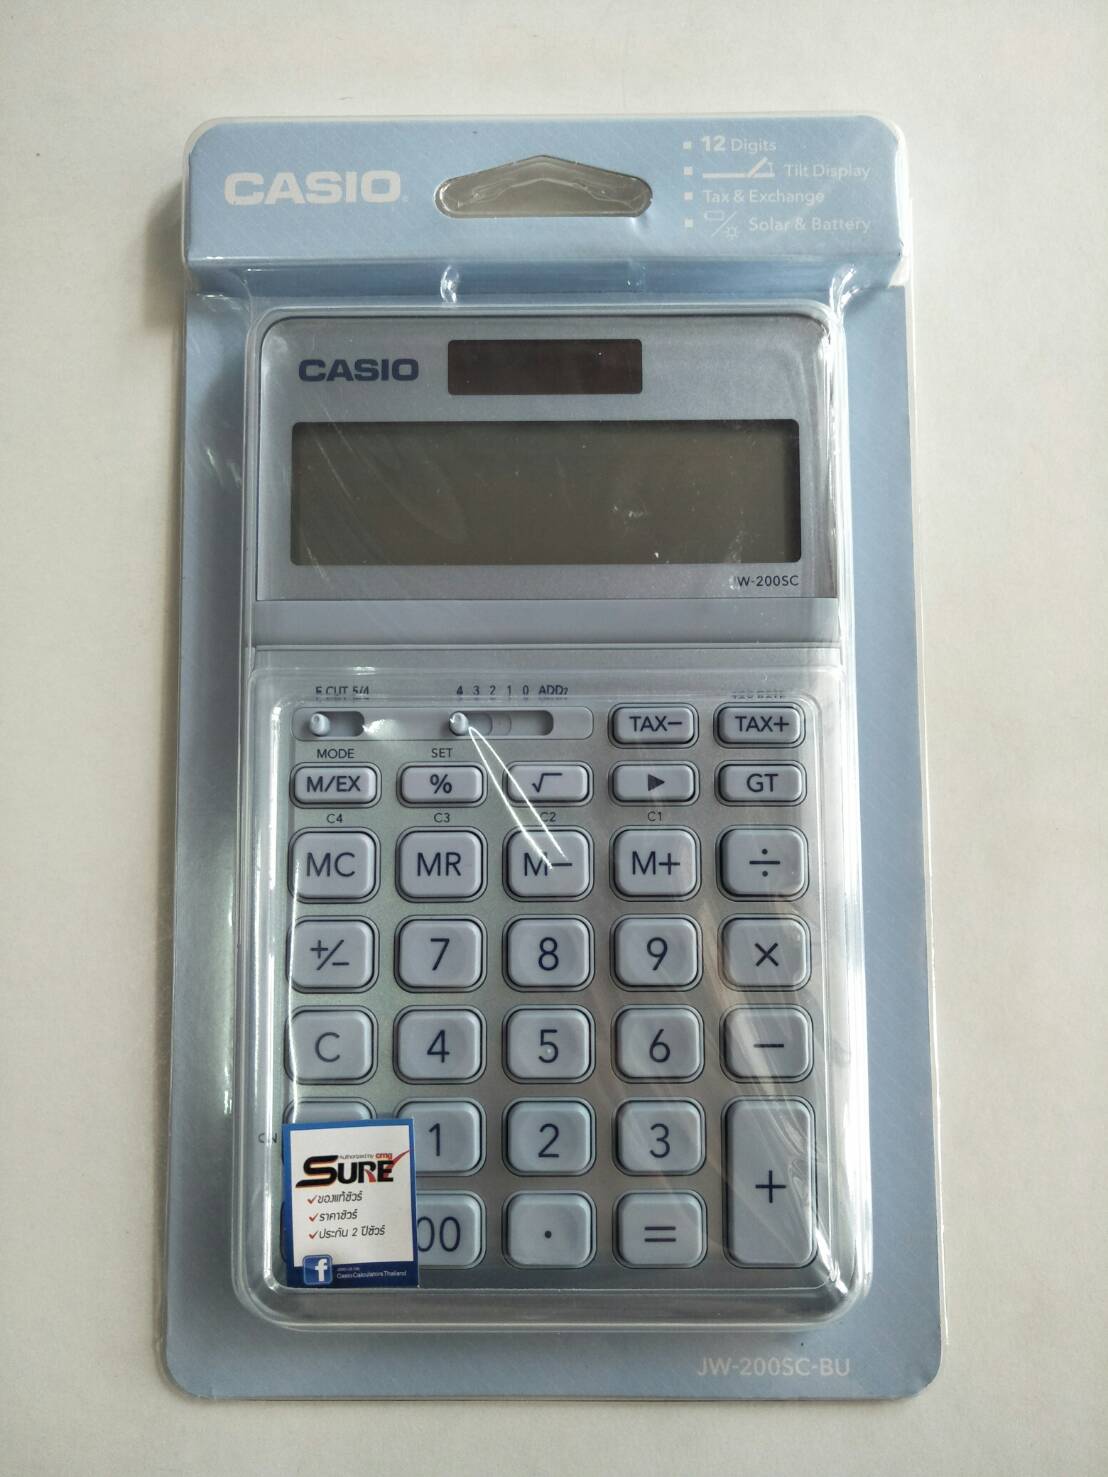 เครื่องคิดเลข Casio jw-200c-bu